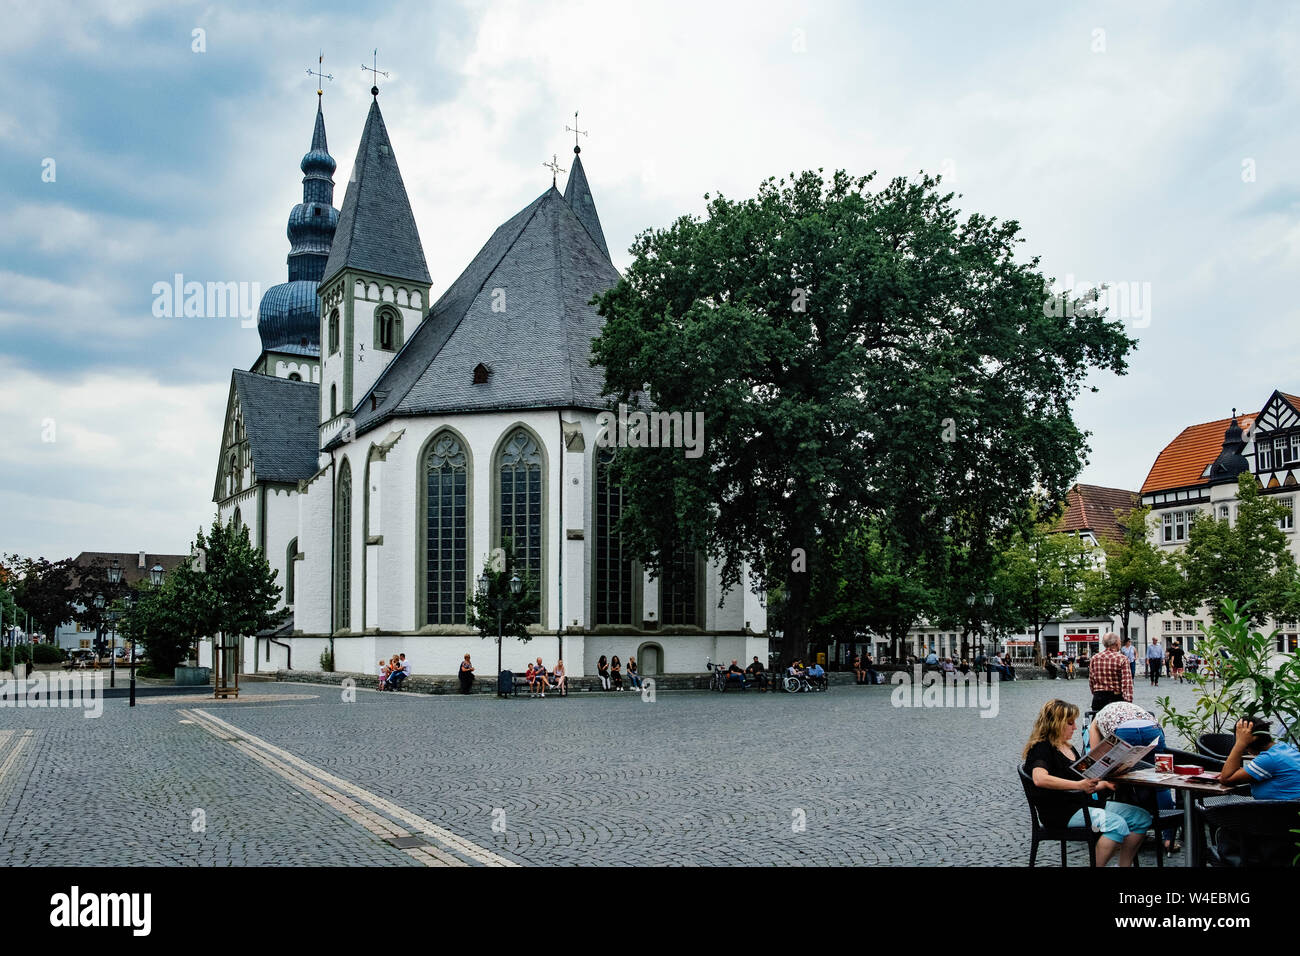 Lippstädter Marienkirche oder die Kirche Maria in Lippstadt, Deutschland Stockfoto